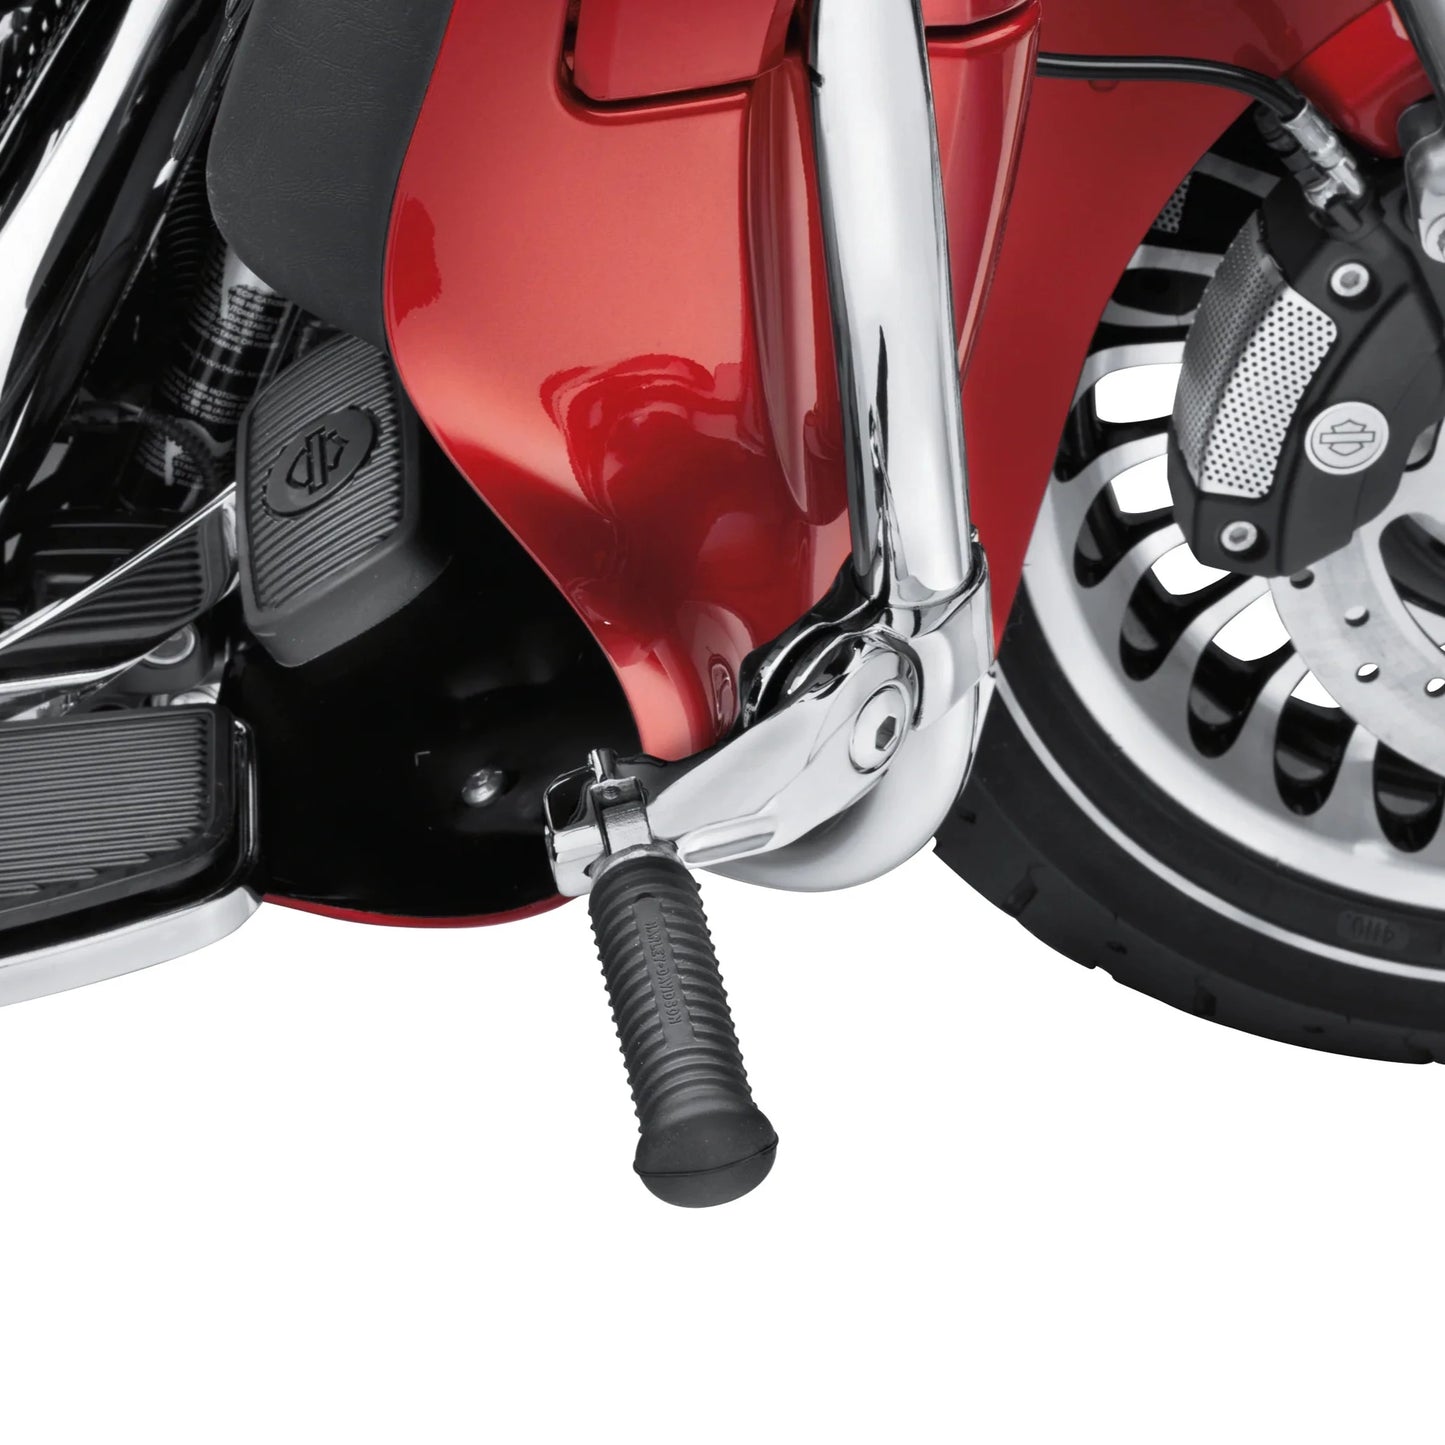 Harley-Davidson Short Angled Adjustable Highway Peg Mount Kit, Chrome, 50830-07A (fitted)